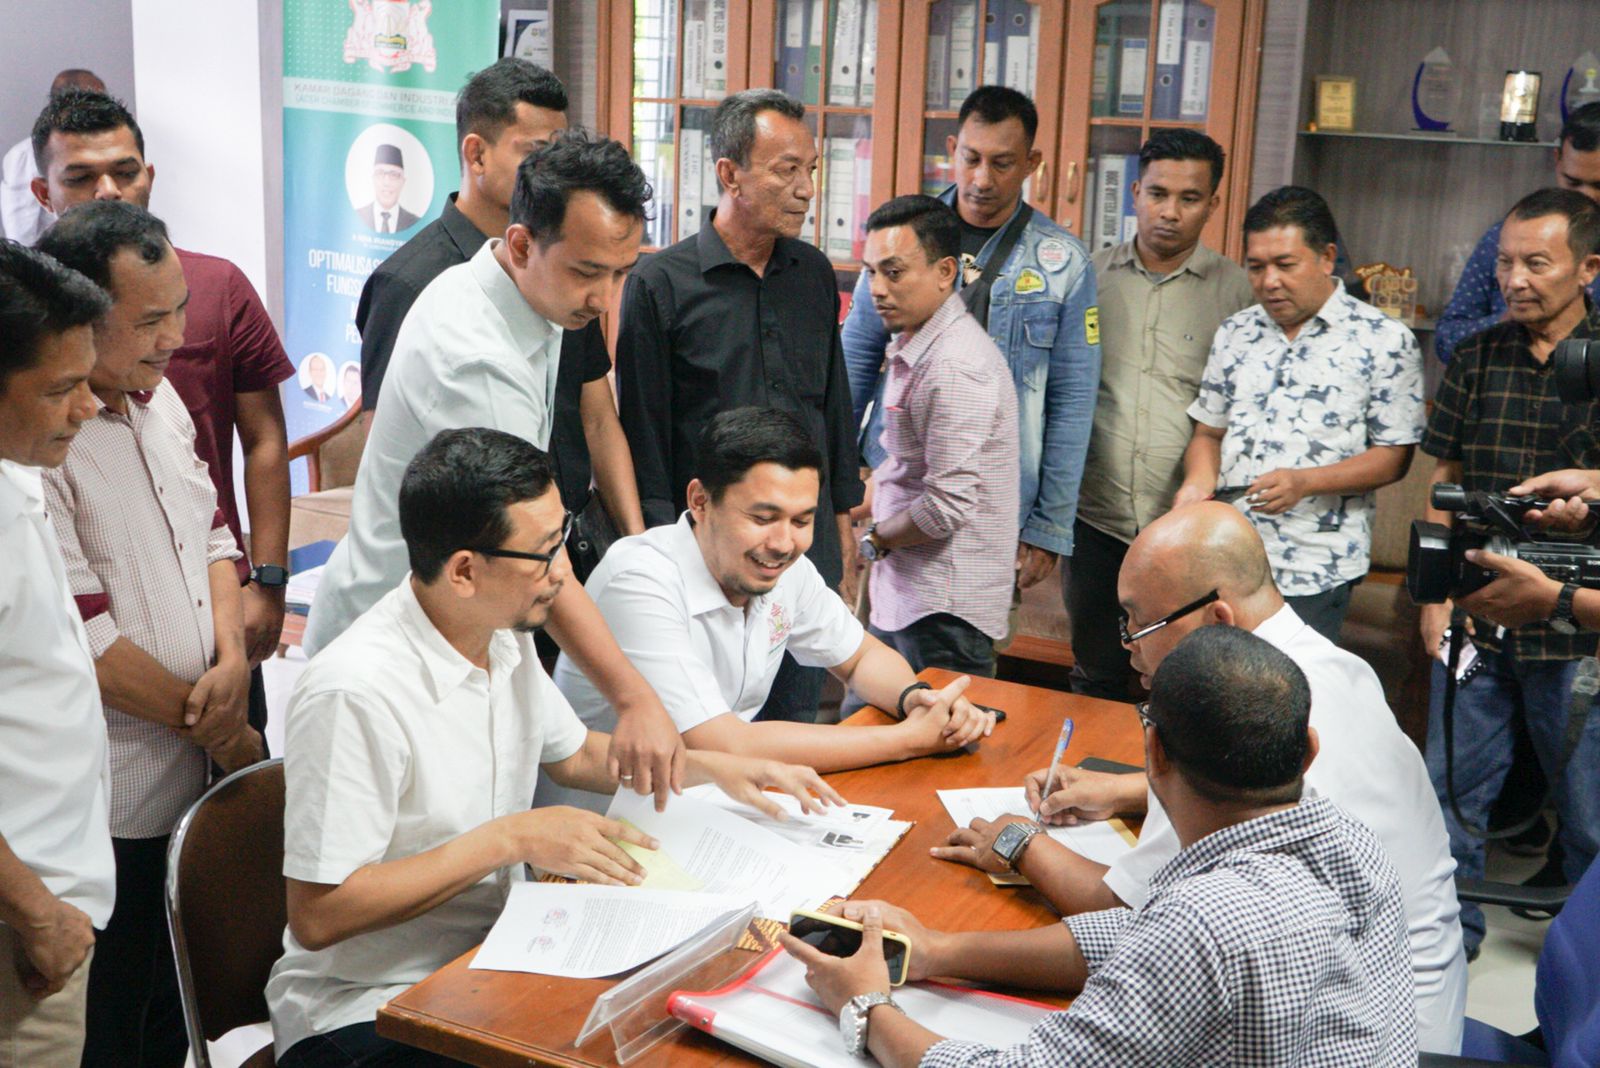 Rizky Syaputra, M Iqbal, dan Ismail Rasyid  penuhi syarat pemilihan Ketua Umum Kadin Aceh